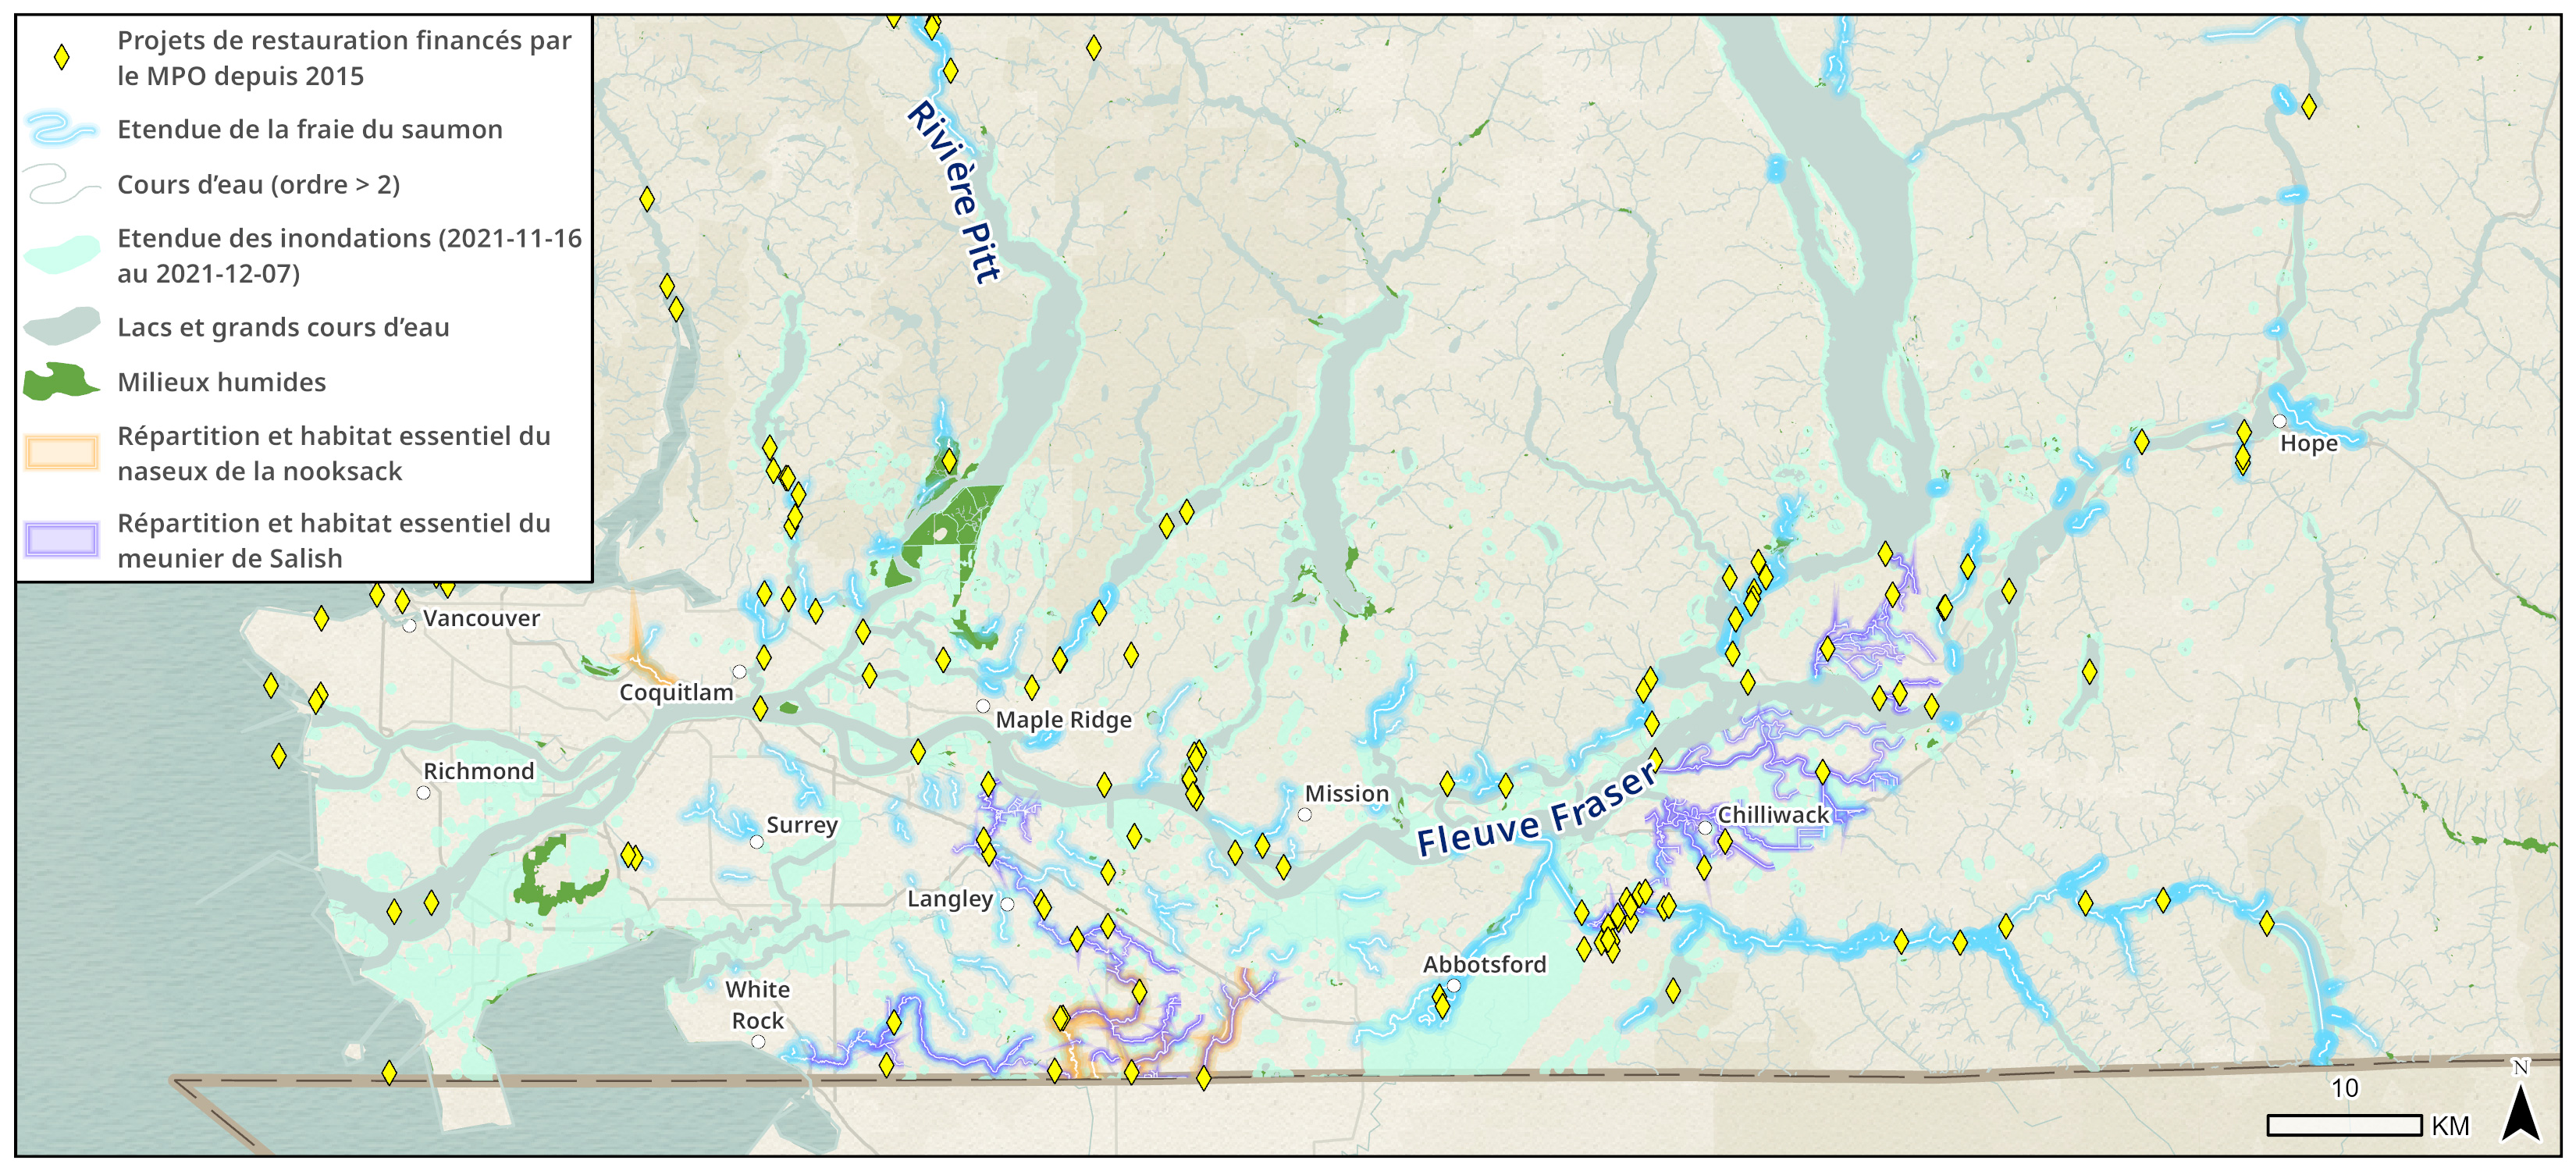 Zones inondées dans la région du bas Fraser en ce qui concerne les sites de restauration, les étendues de frai du saumon et l'habitat important pour le poisson.